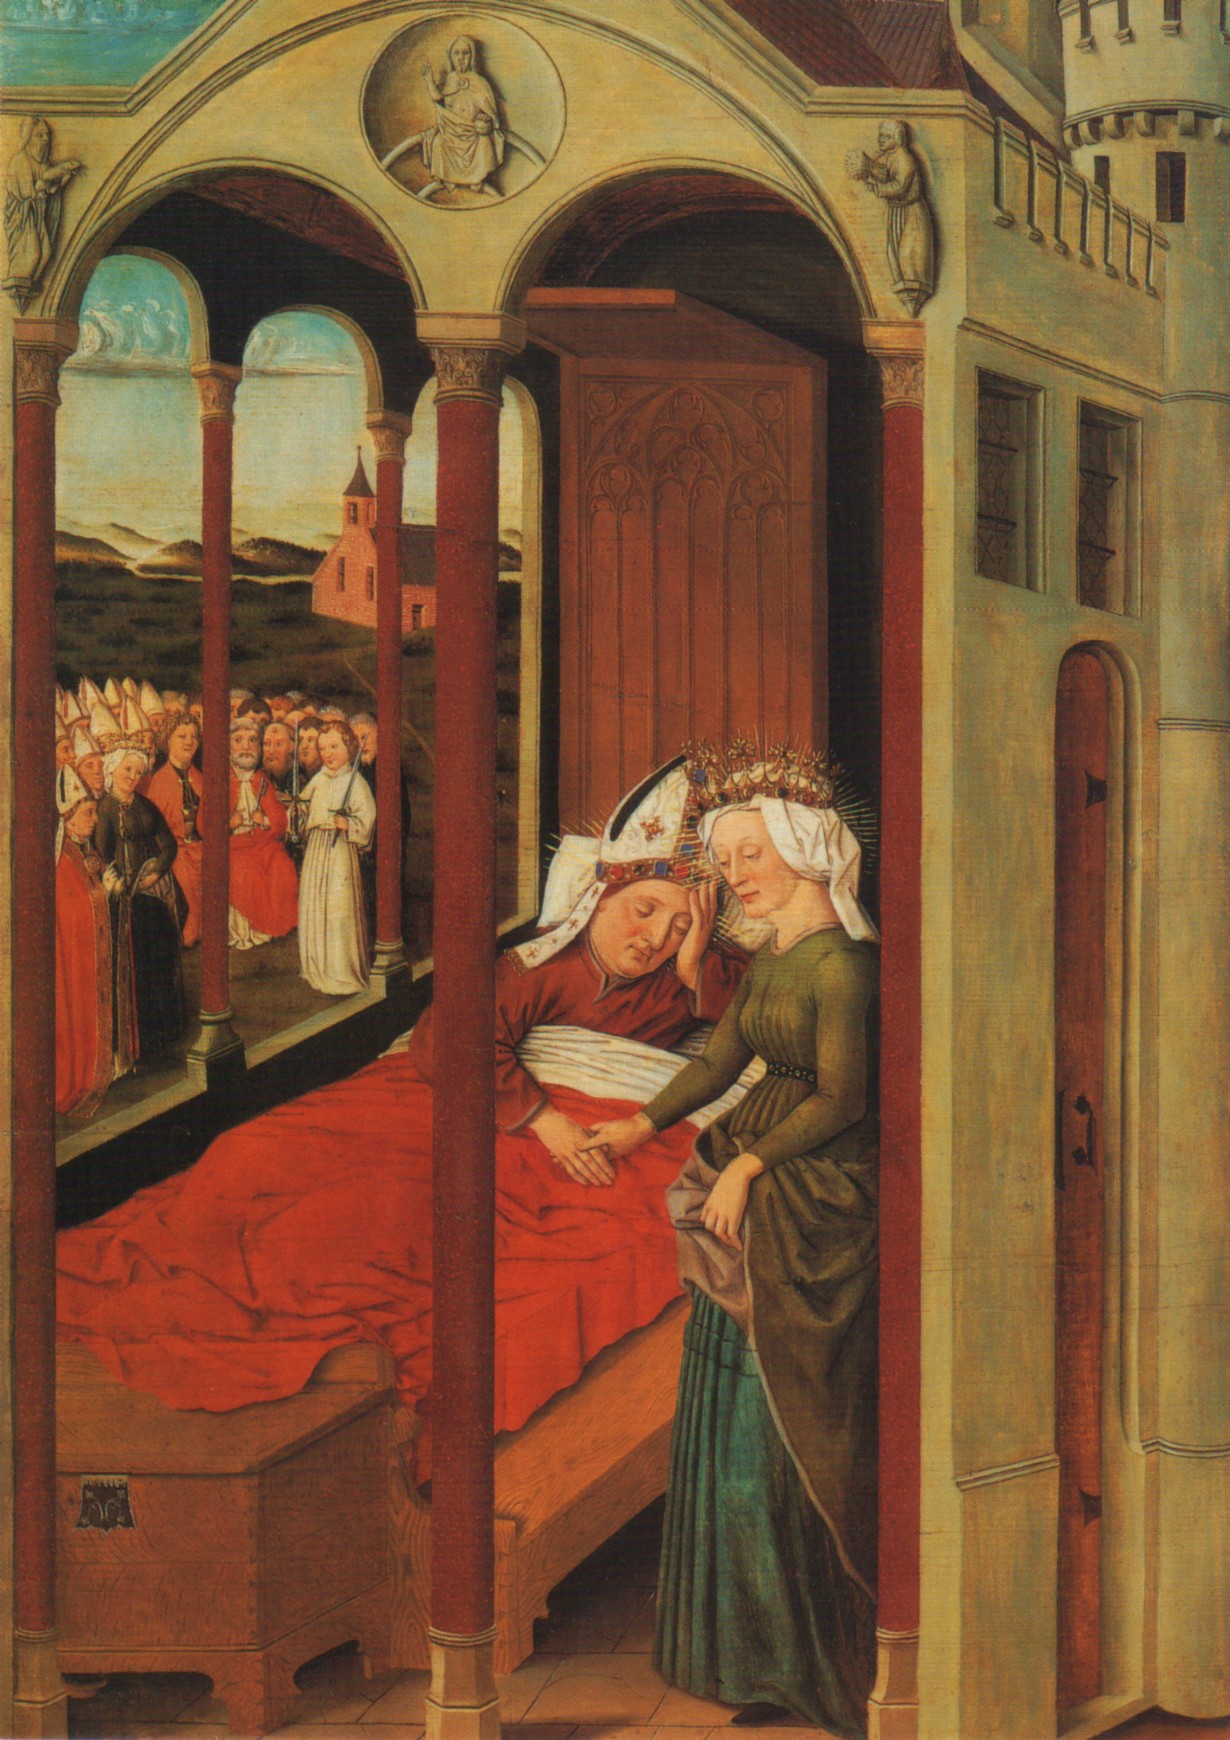 Tafelbild, um 1480: Afra erscheint Bischof Ulrich im Traum, in der Basilika St. Ulrich und Afra in Augsburg